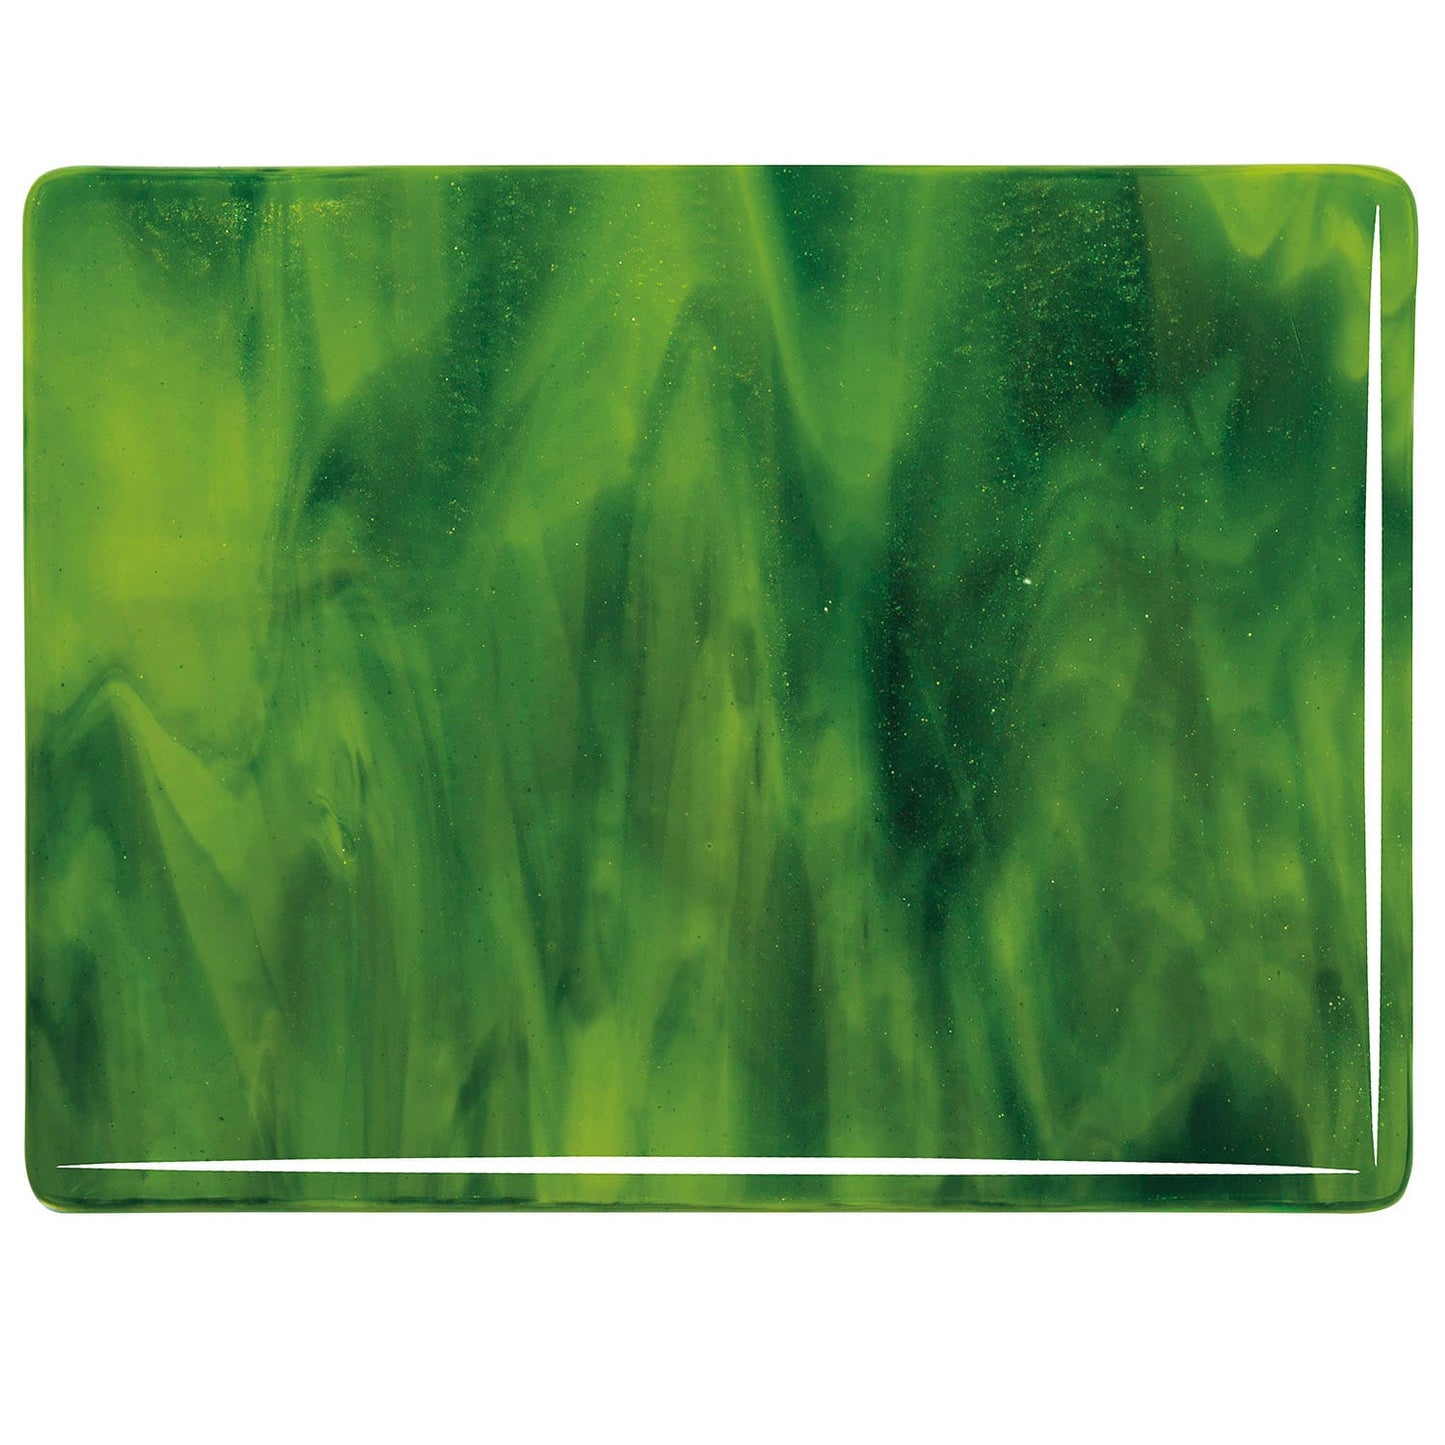 Bullseye COE90 Fusing Glass 002121 Yellow Opalescent, Deep Forest Green Half Sheet